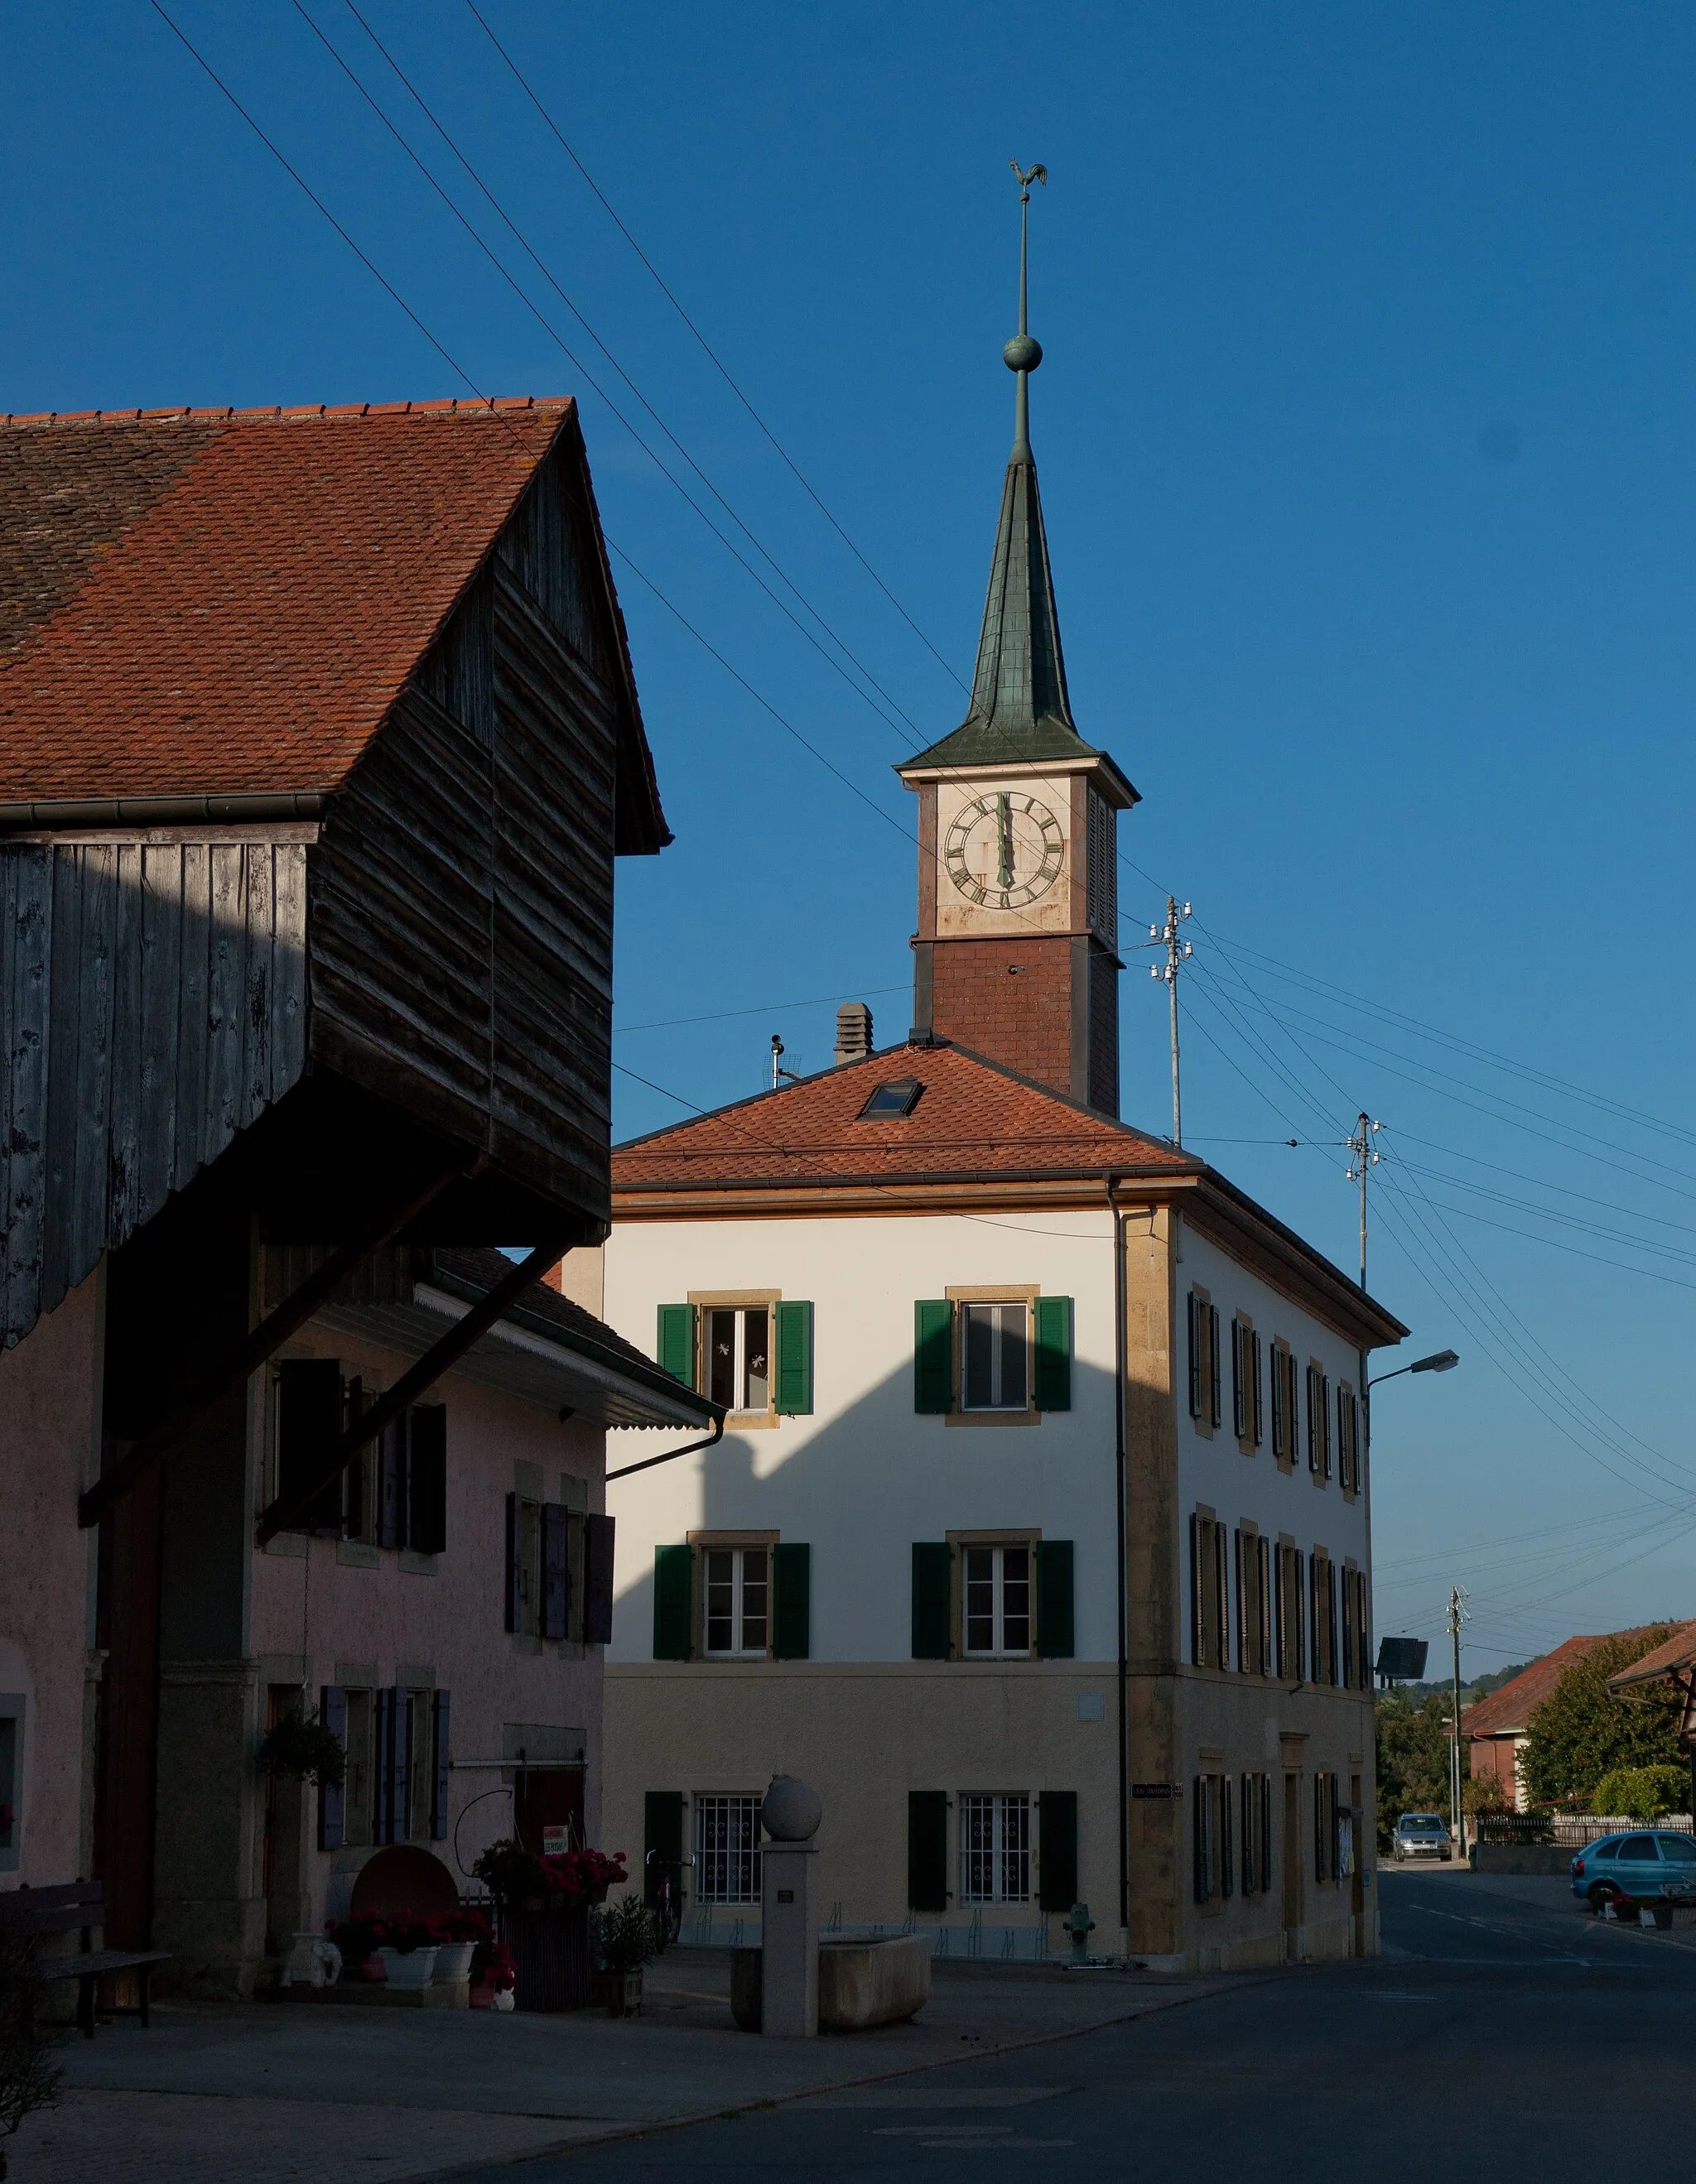 Photo showing: Maison de commune de Valeyres-sous-Ursins, canton de Vaud, Suisse.